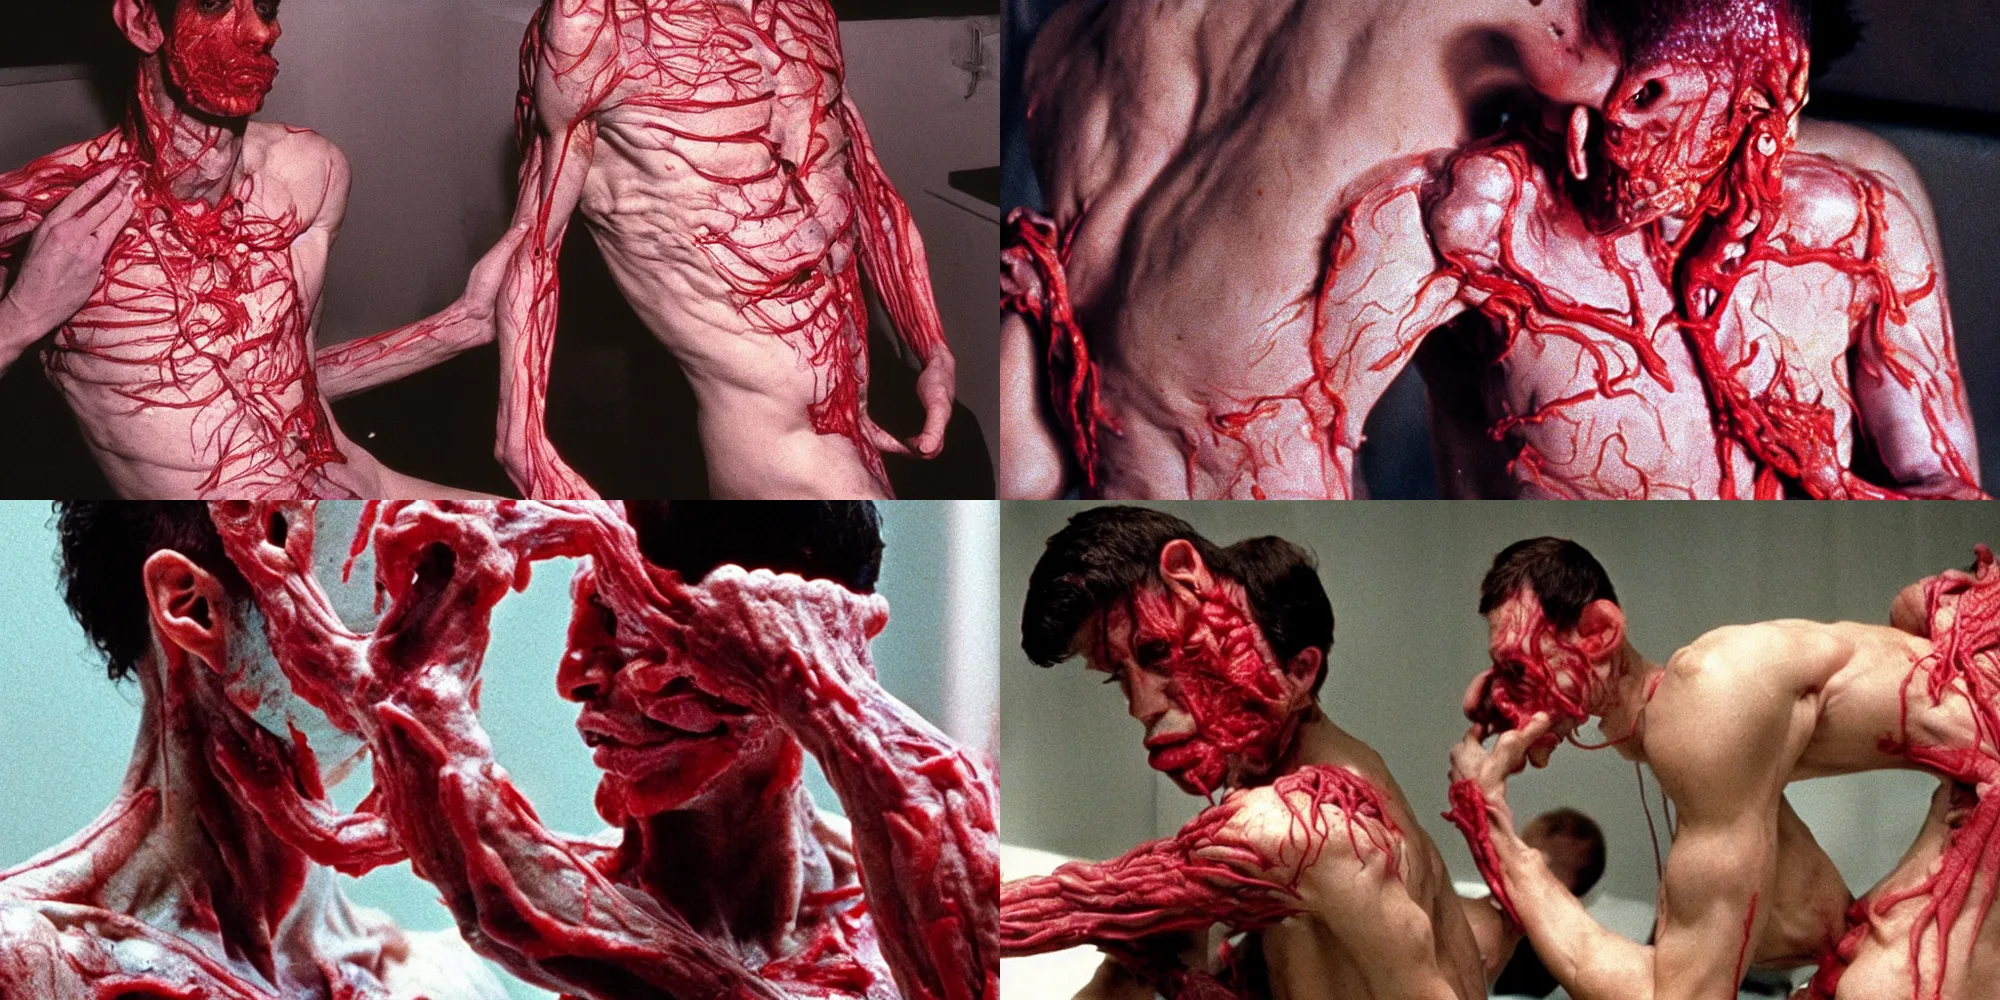 Prompt: drake body horror directed by david cronenberg, limb mutations, swollen veins, red flesh strings, cinestill 8 0 0 t, 1 9 8 0 s movie still, film grain